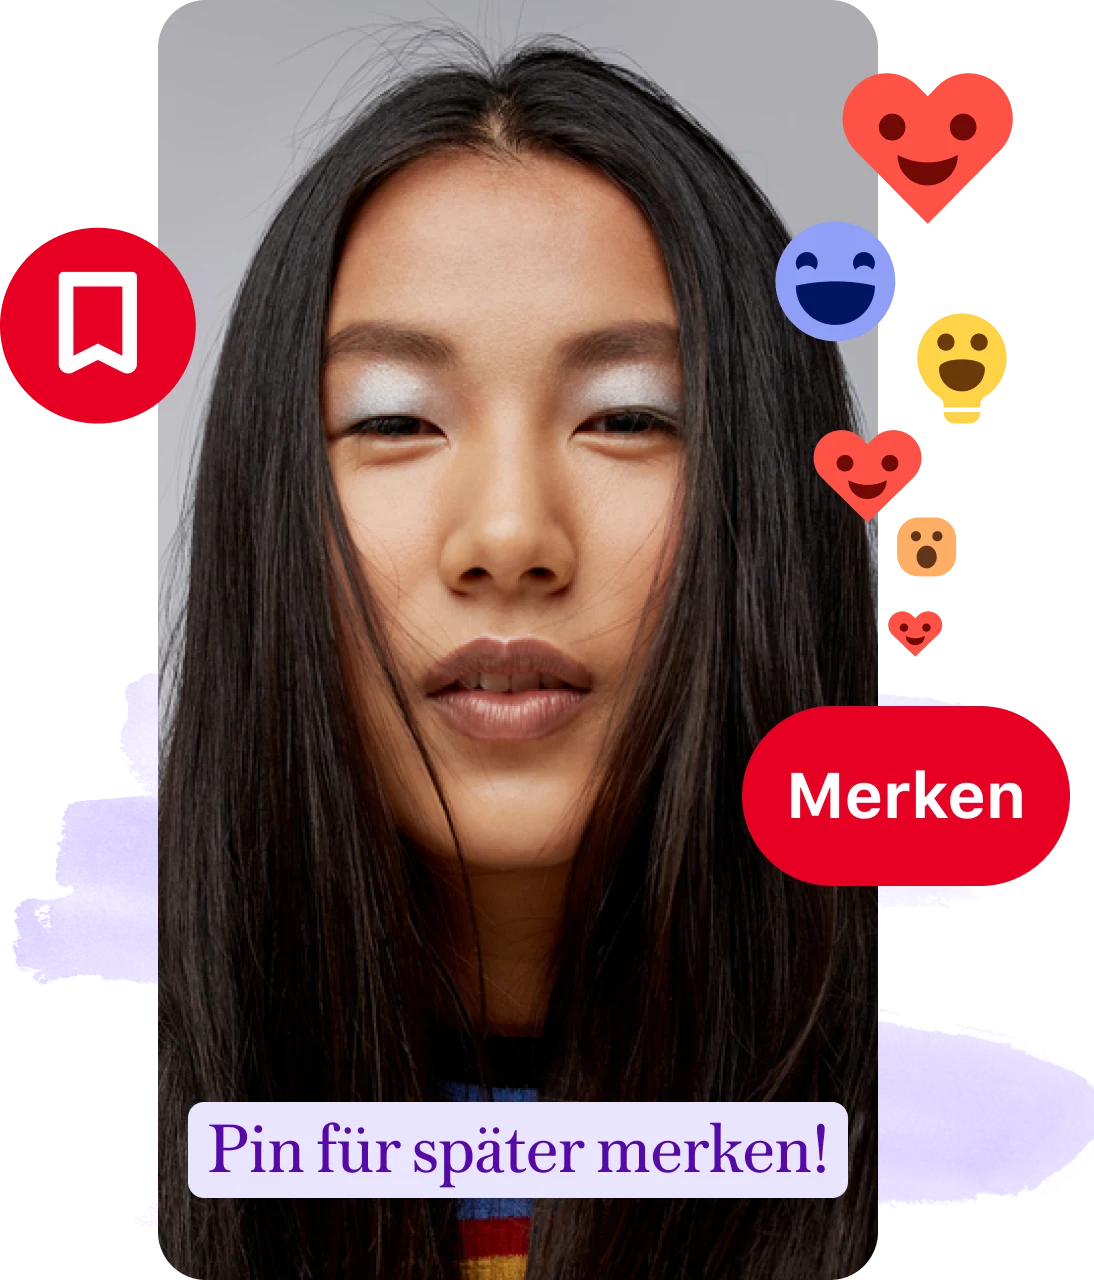 Collage aus Pin mit Frauengesicht, Erinnerung zum Merken, Merken-Buttons und Emoji-Reaktionen